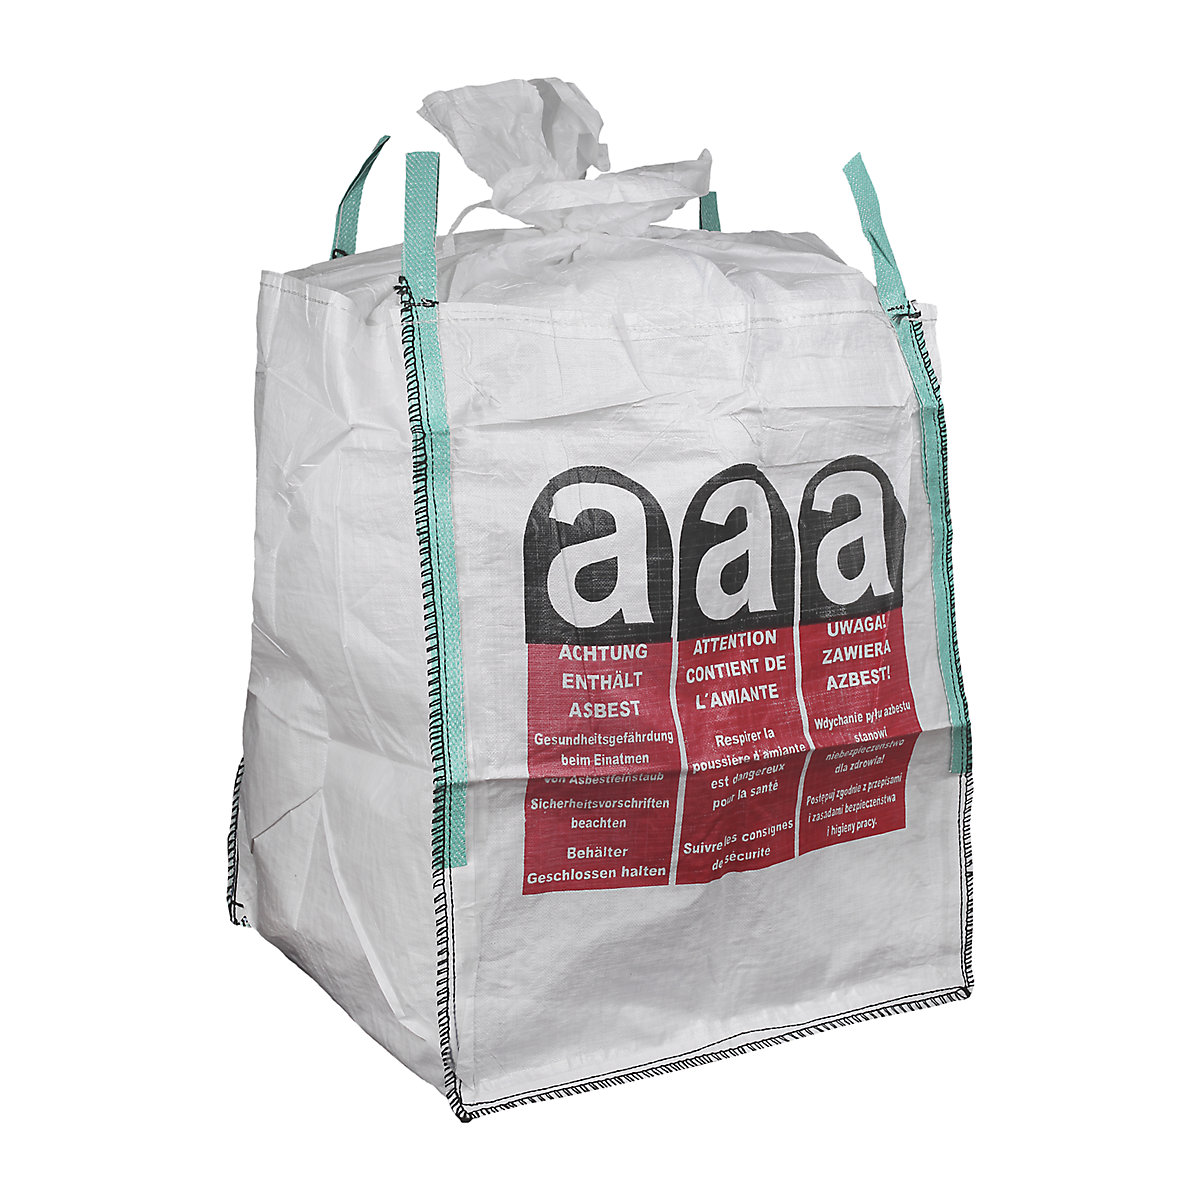 Big-Bag, fundo fechado, tecido impermeável com impressão de amianto, embalagem de 20 unid.-3